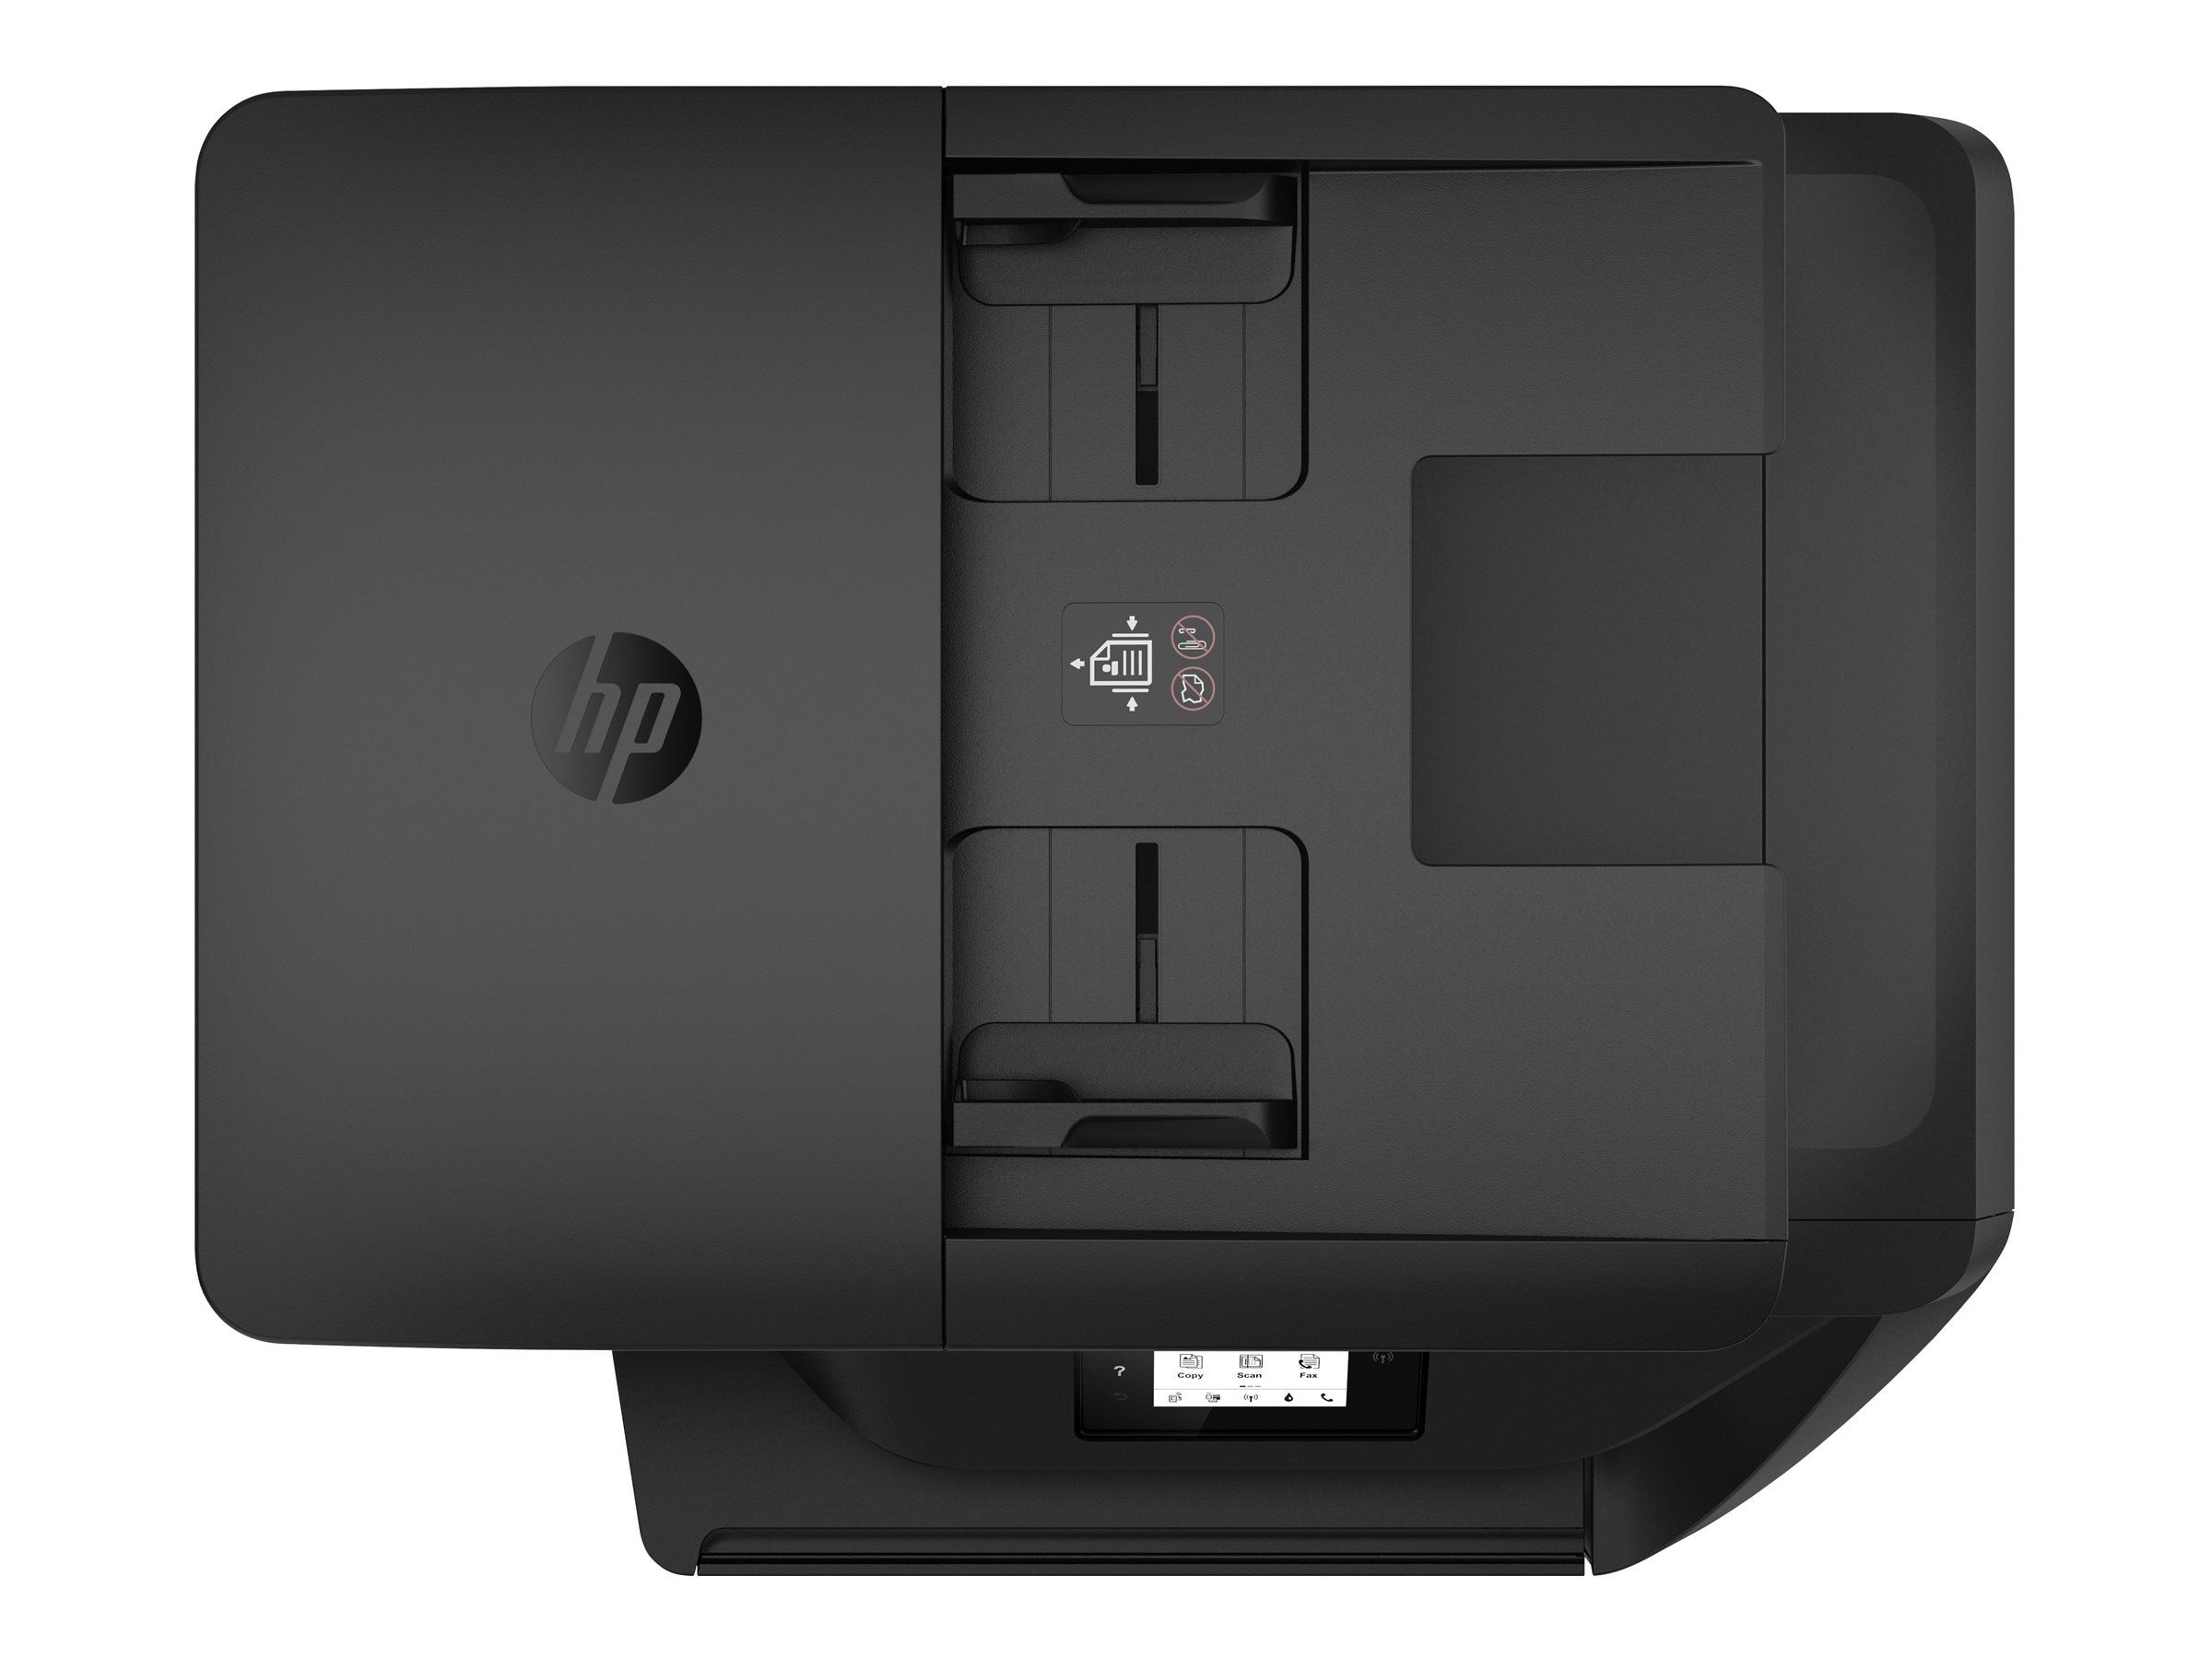 HP Officejet 6950 All-in-One - Imprimante multifonctions - couleur - jet d'encre - Legal (216 x 356 mm)/A4 (210 x 297 mm) (original) - A4/Legal (support) - jusqu'à 11 ppm (copie) - jusqu'à 16 ppm (impression) - 225 feuilles - 33.6 Kbits/s - USB 2.0, Wi-Fi(n) - Compatibilité HP Instant Ink - P4C85A#BHC - Imprimantes multifonctions